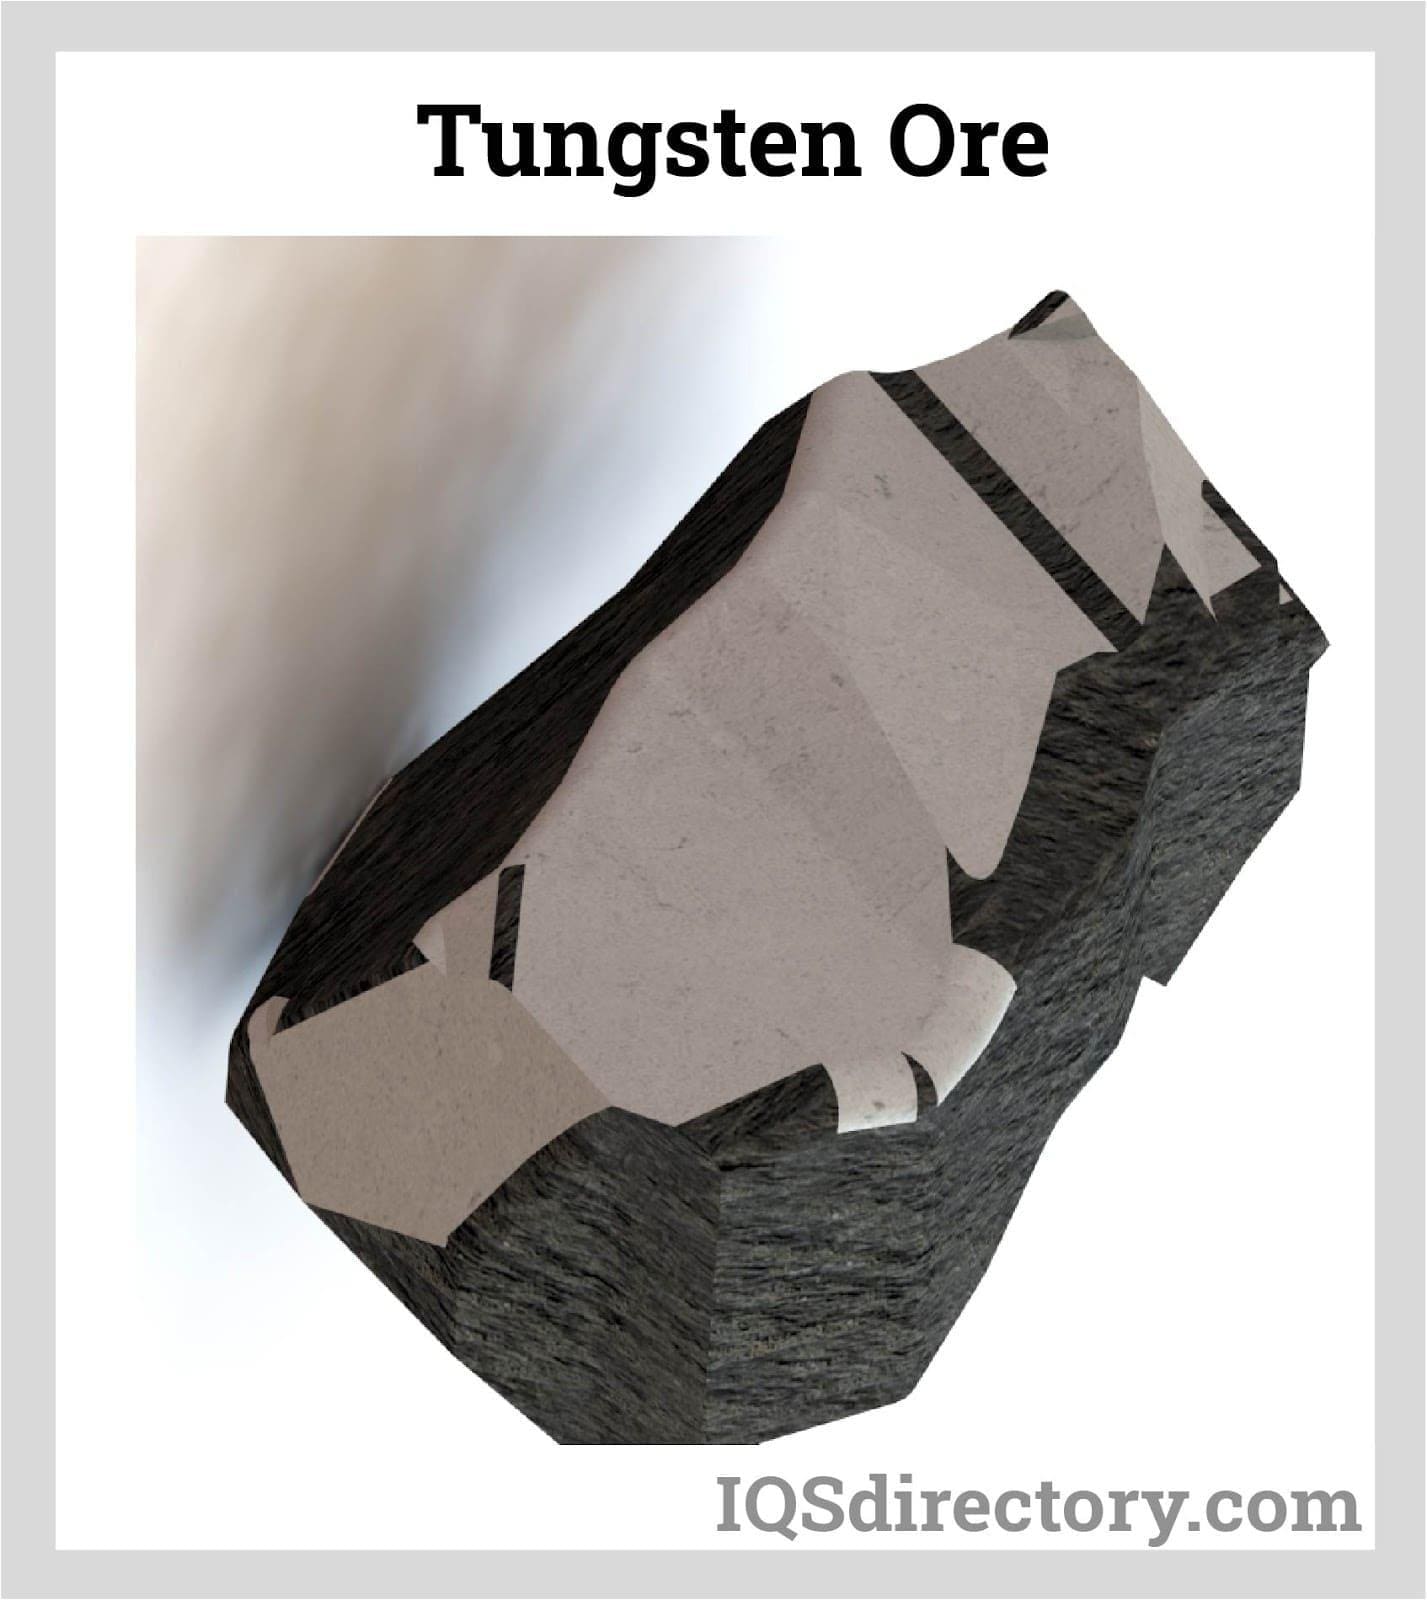 Tungsten Ore